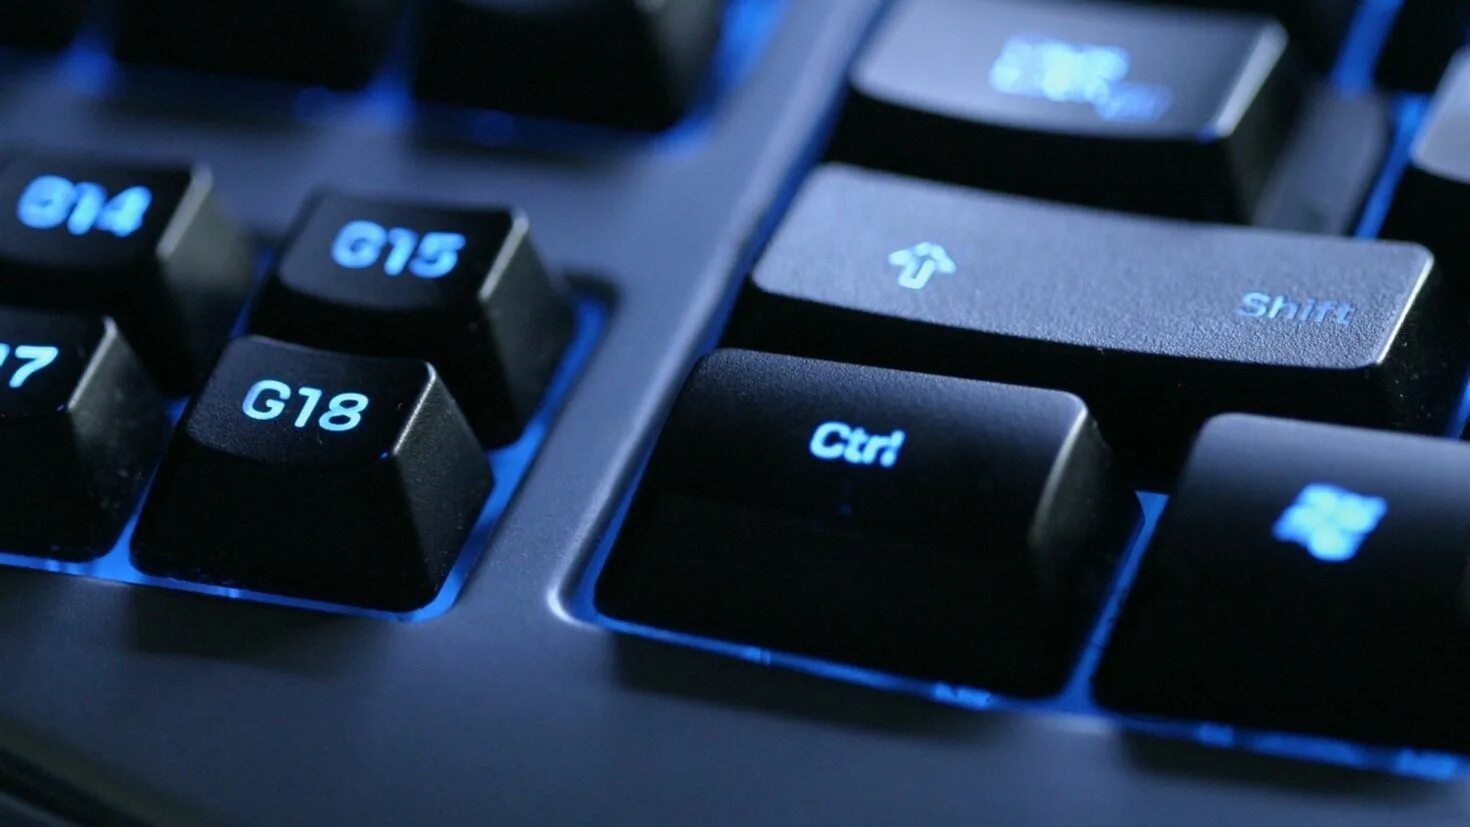 C image source. Клавиатура. Клавиатура кнопки. Компьютерная заставка. Обои на рабочий стол компьютерные.